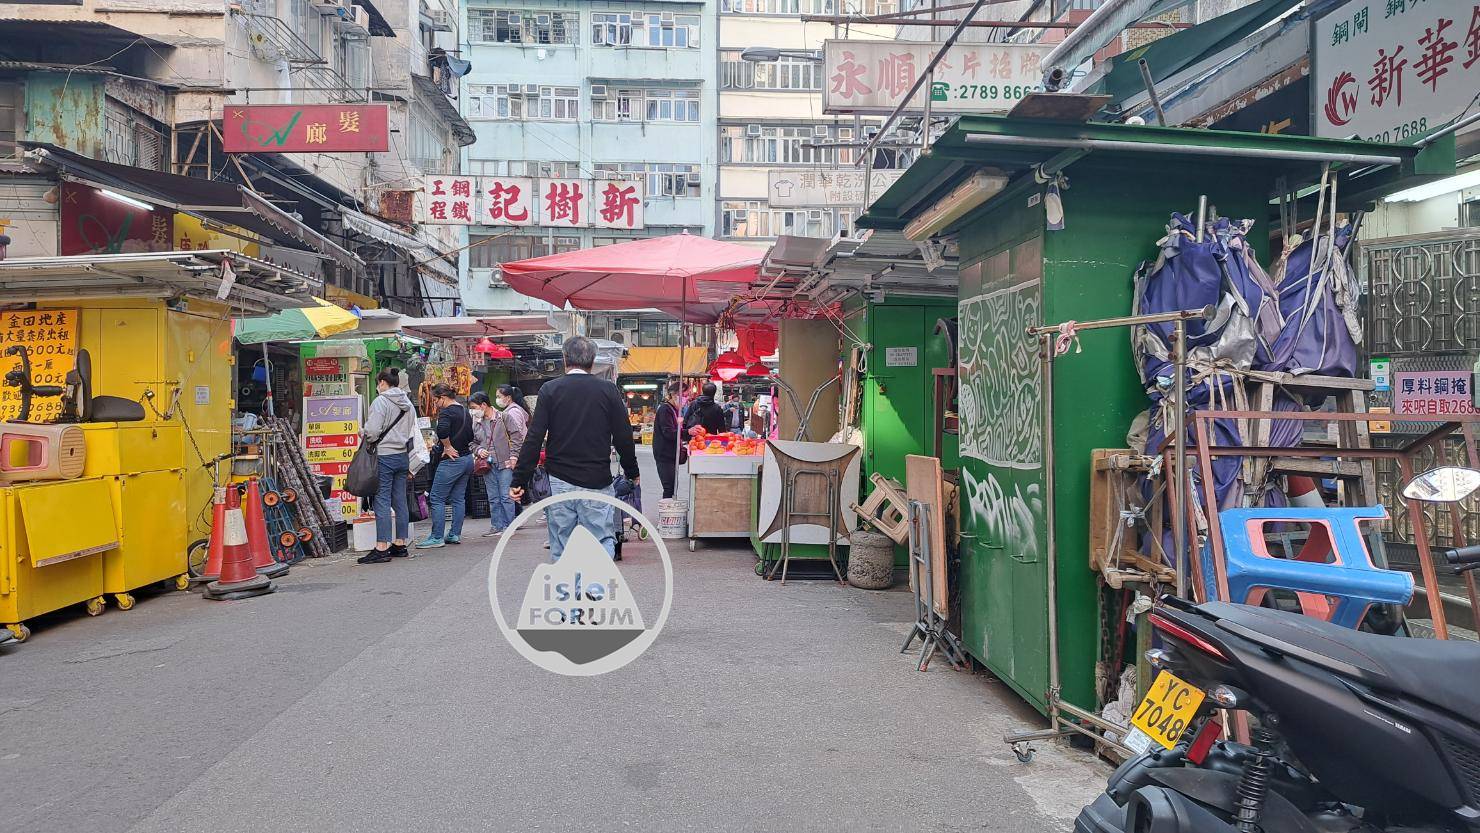 上海街廣東道之間的快富街小販檔 Fife Street Hawker Stall (12).jpg